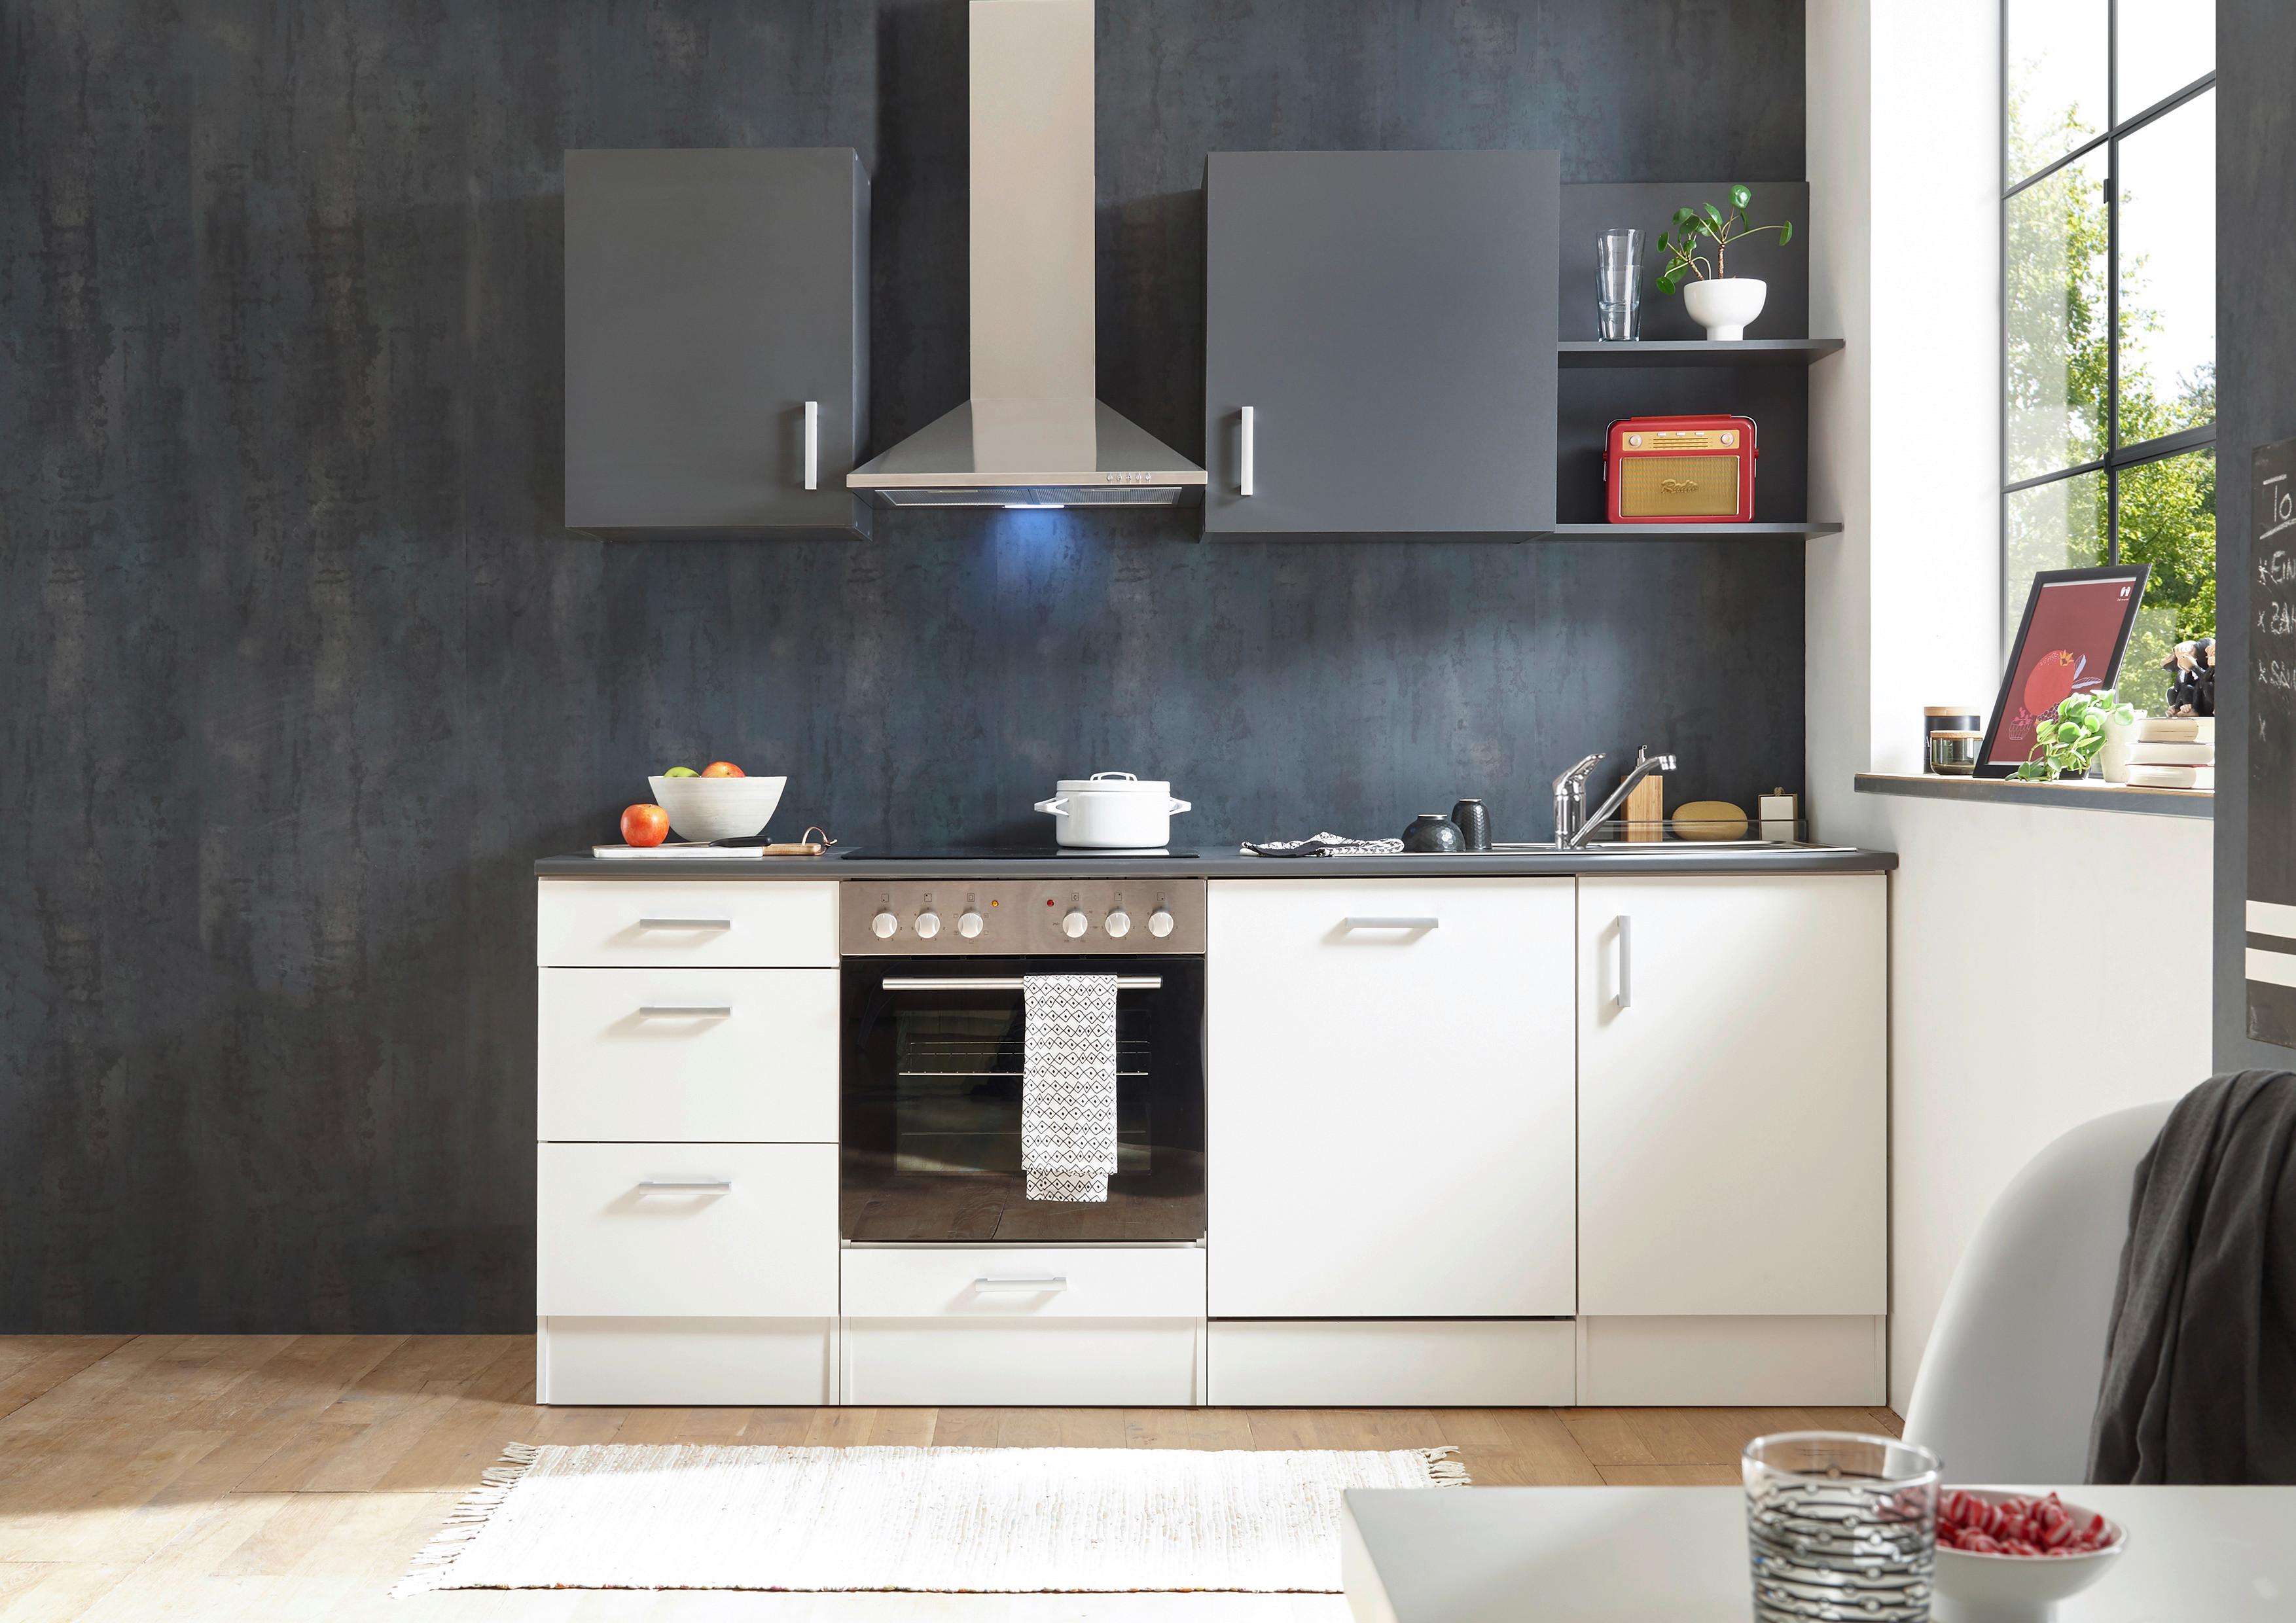 Küchenzeile Corner mit Geräten 220 cm Weiß/Anthrazit - Anthrazit/Weiß, Basics, Holzwerkstoff (220cm) - MID.YOU